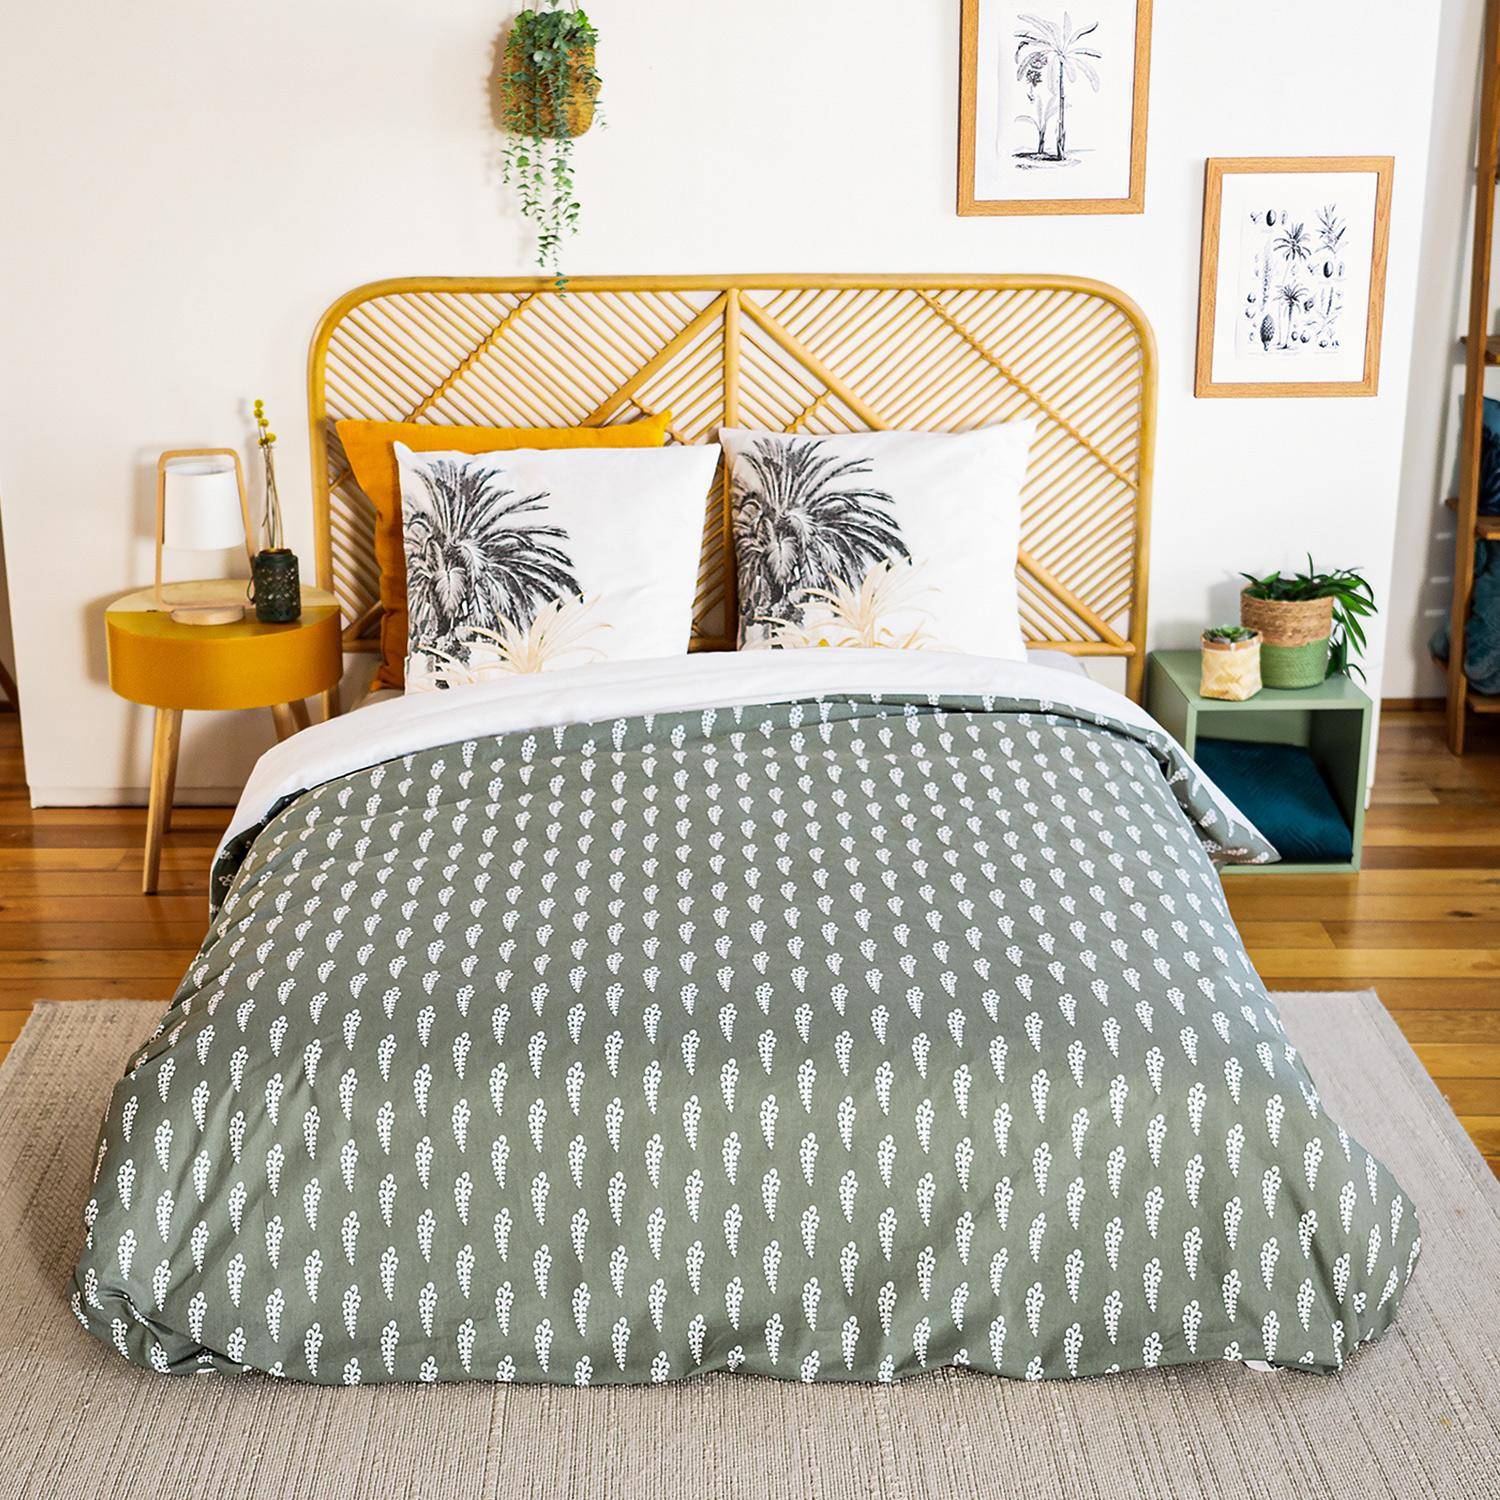 Wendebettwäsche-Set mit Palmenmotiven aus weicher Baumwolle, Palmera, 1 Bettbezug, 2 Kissenbezüge 260x240cm Photo2